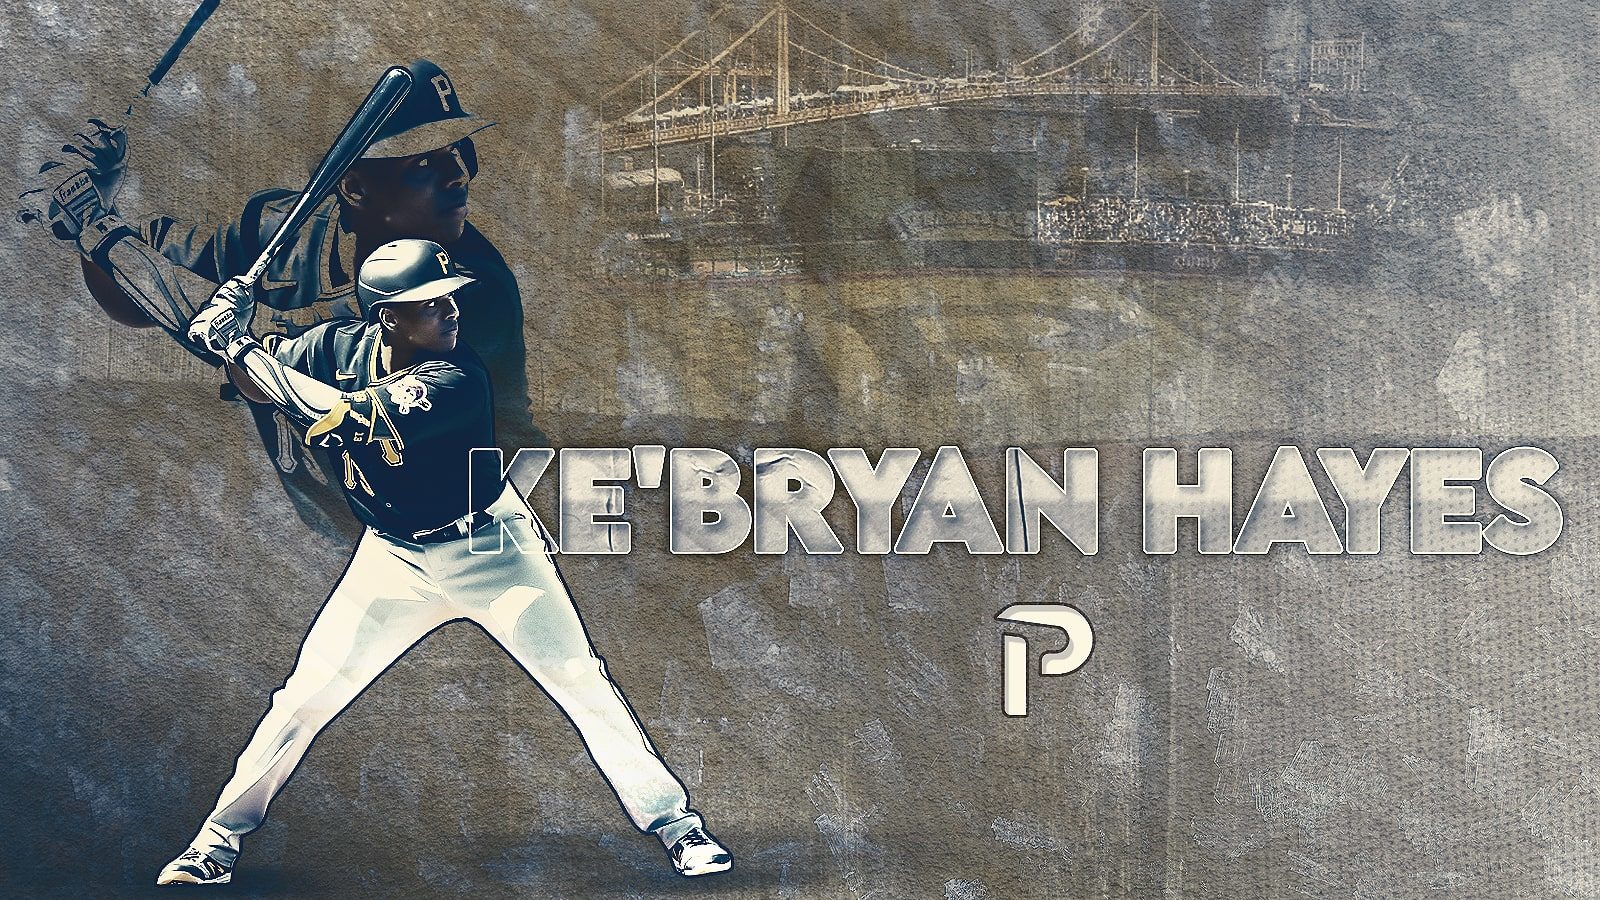 A closer look at Ke'Bryan Hayes' plate struggles this season